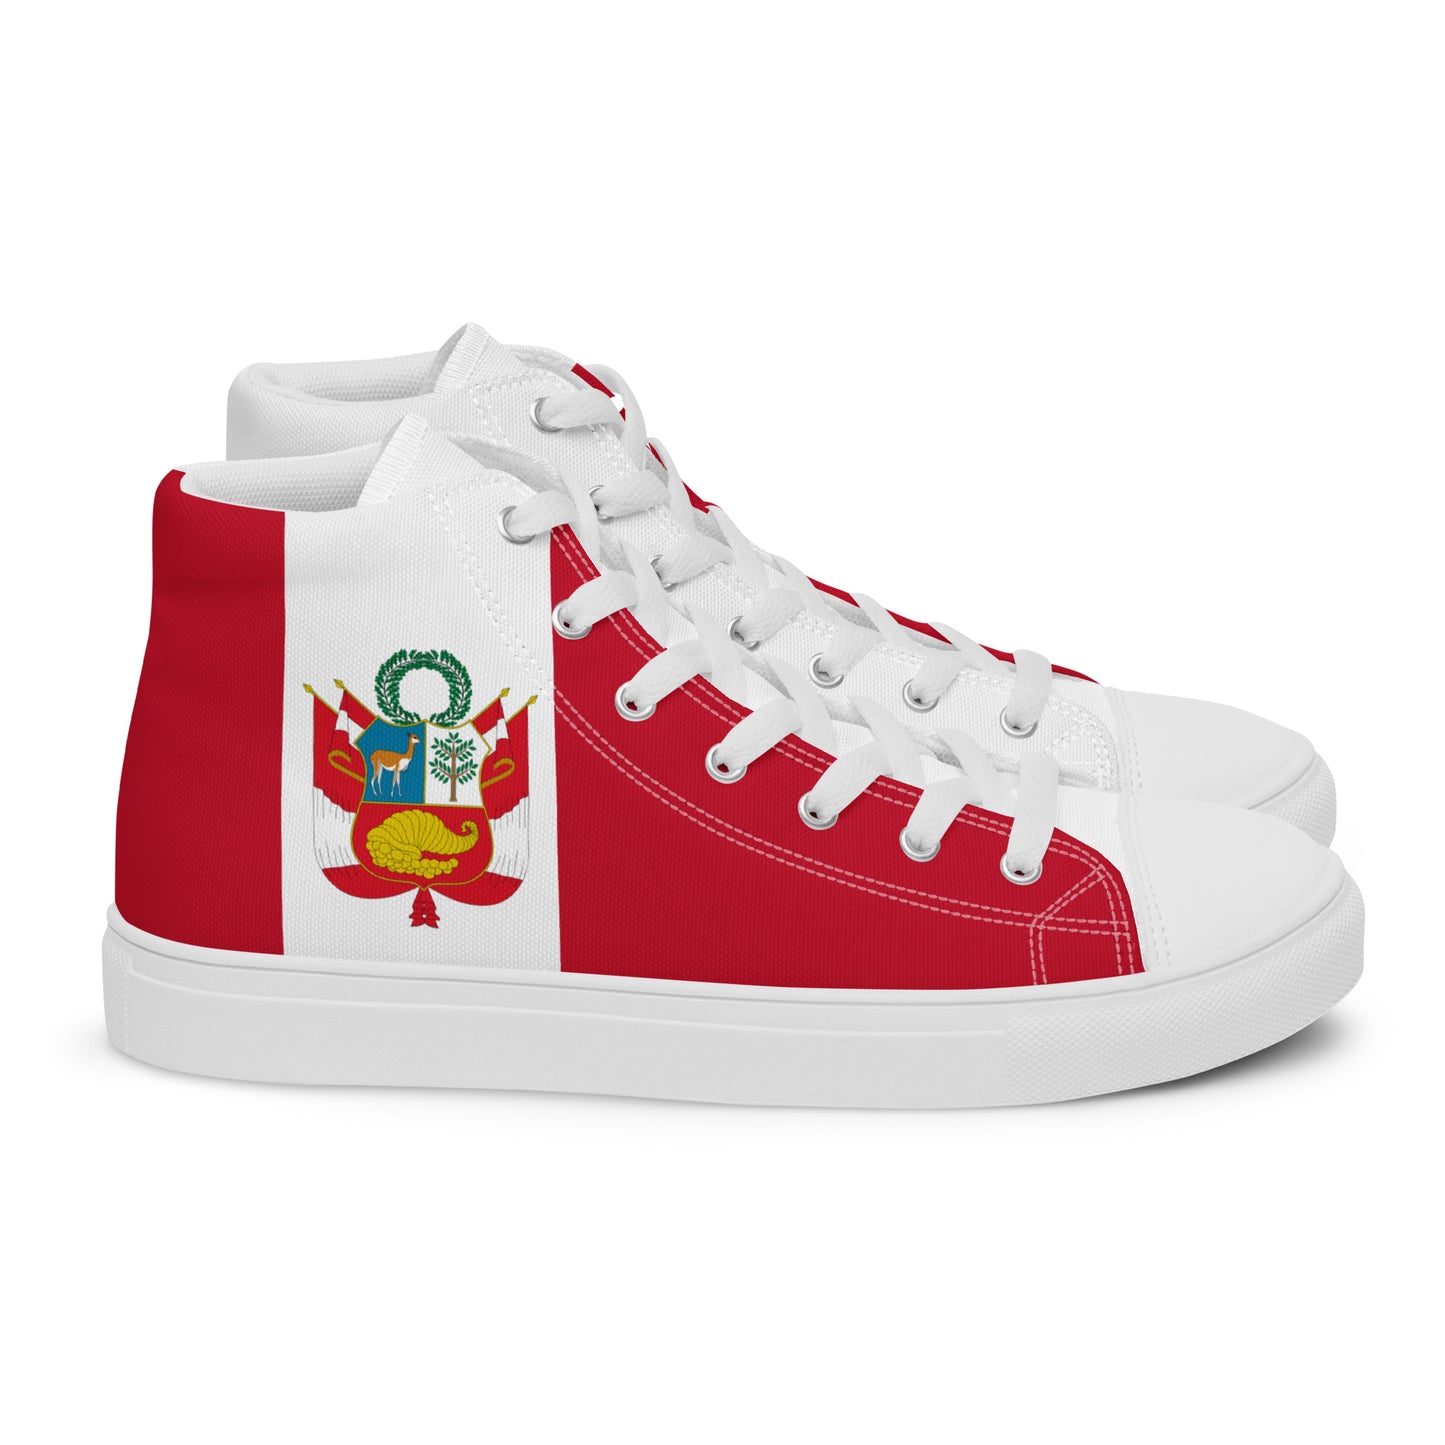 Perú - Men - Bandera - High top shoes